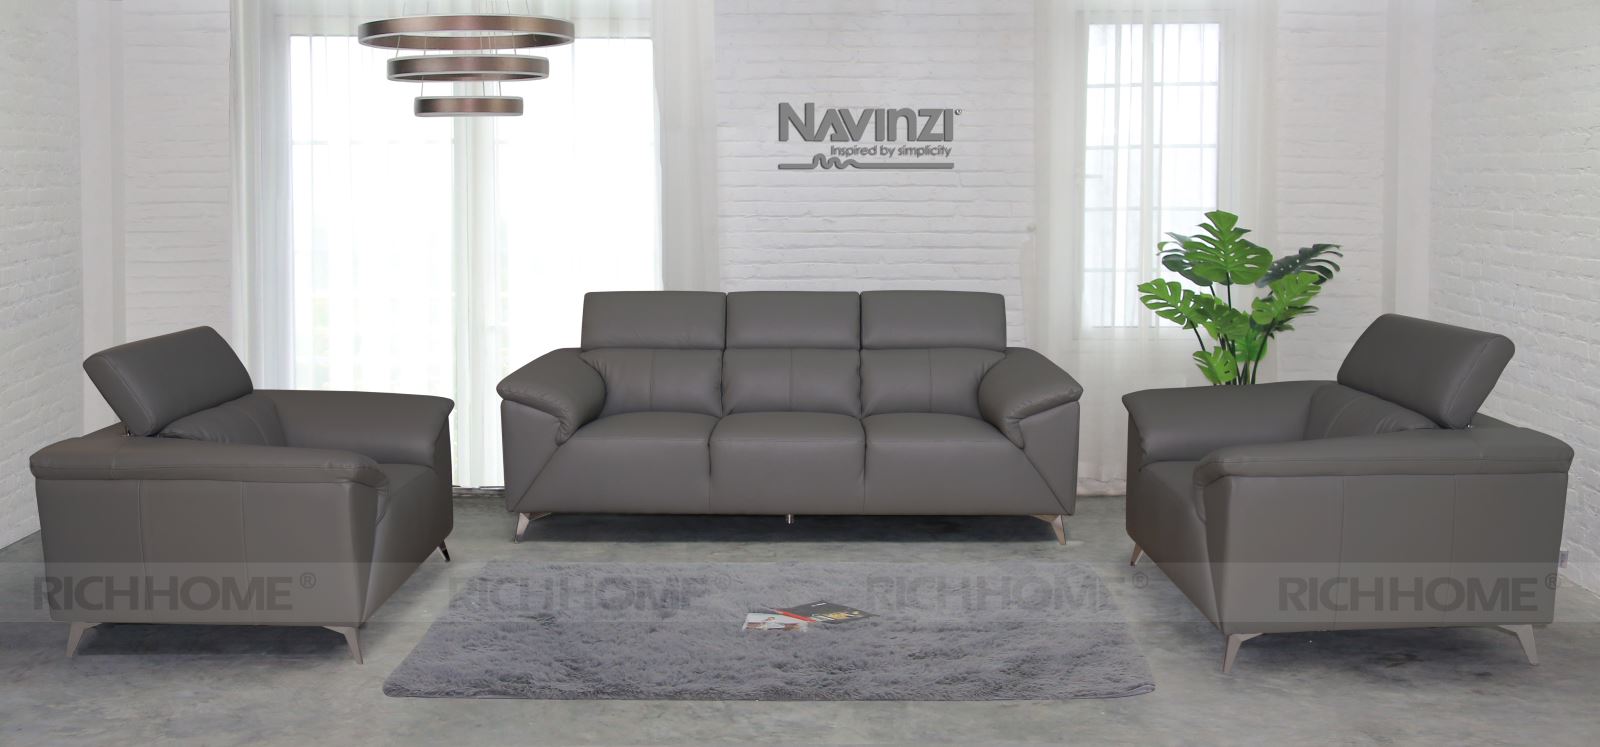 Mãn nhãn với 8 mẫu ghế sofa nhập khẩu Malaysia hiện đại tinh tế - Ảnh 8